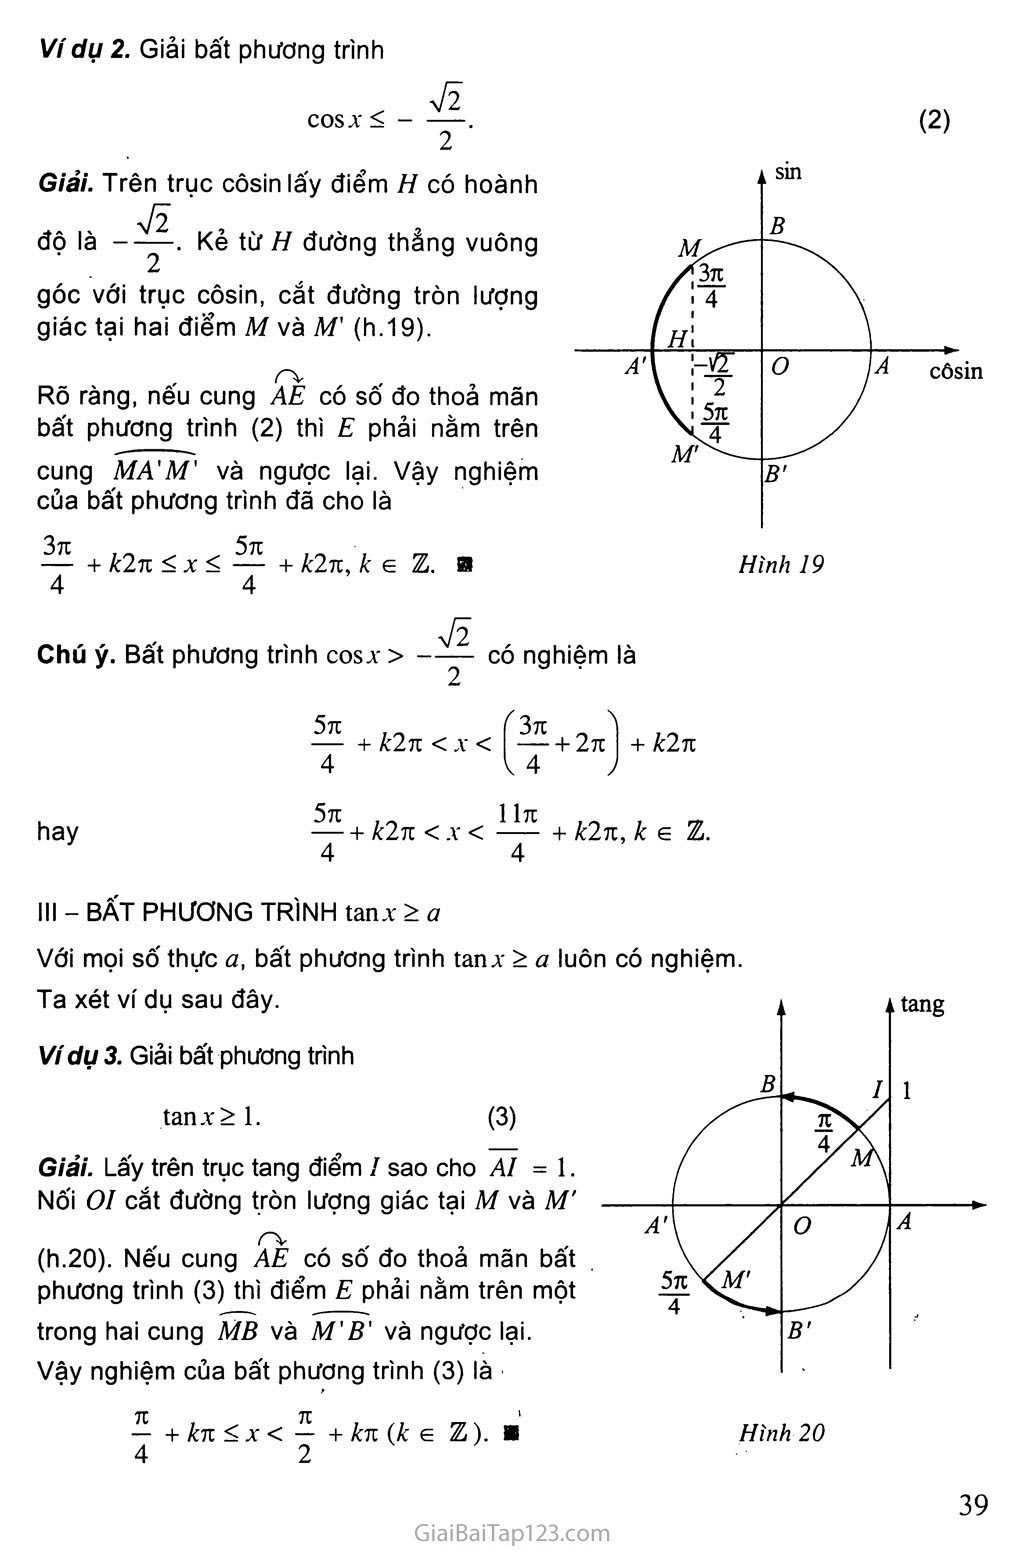 Bài 3. Một số phương trình lượng giác thường gặp trang 11